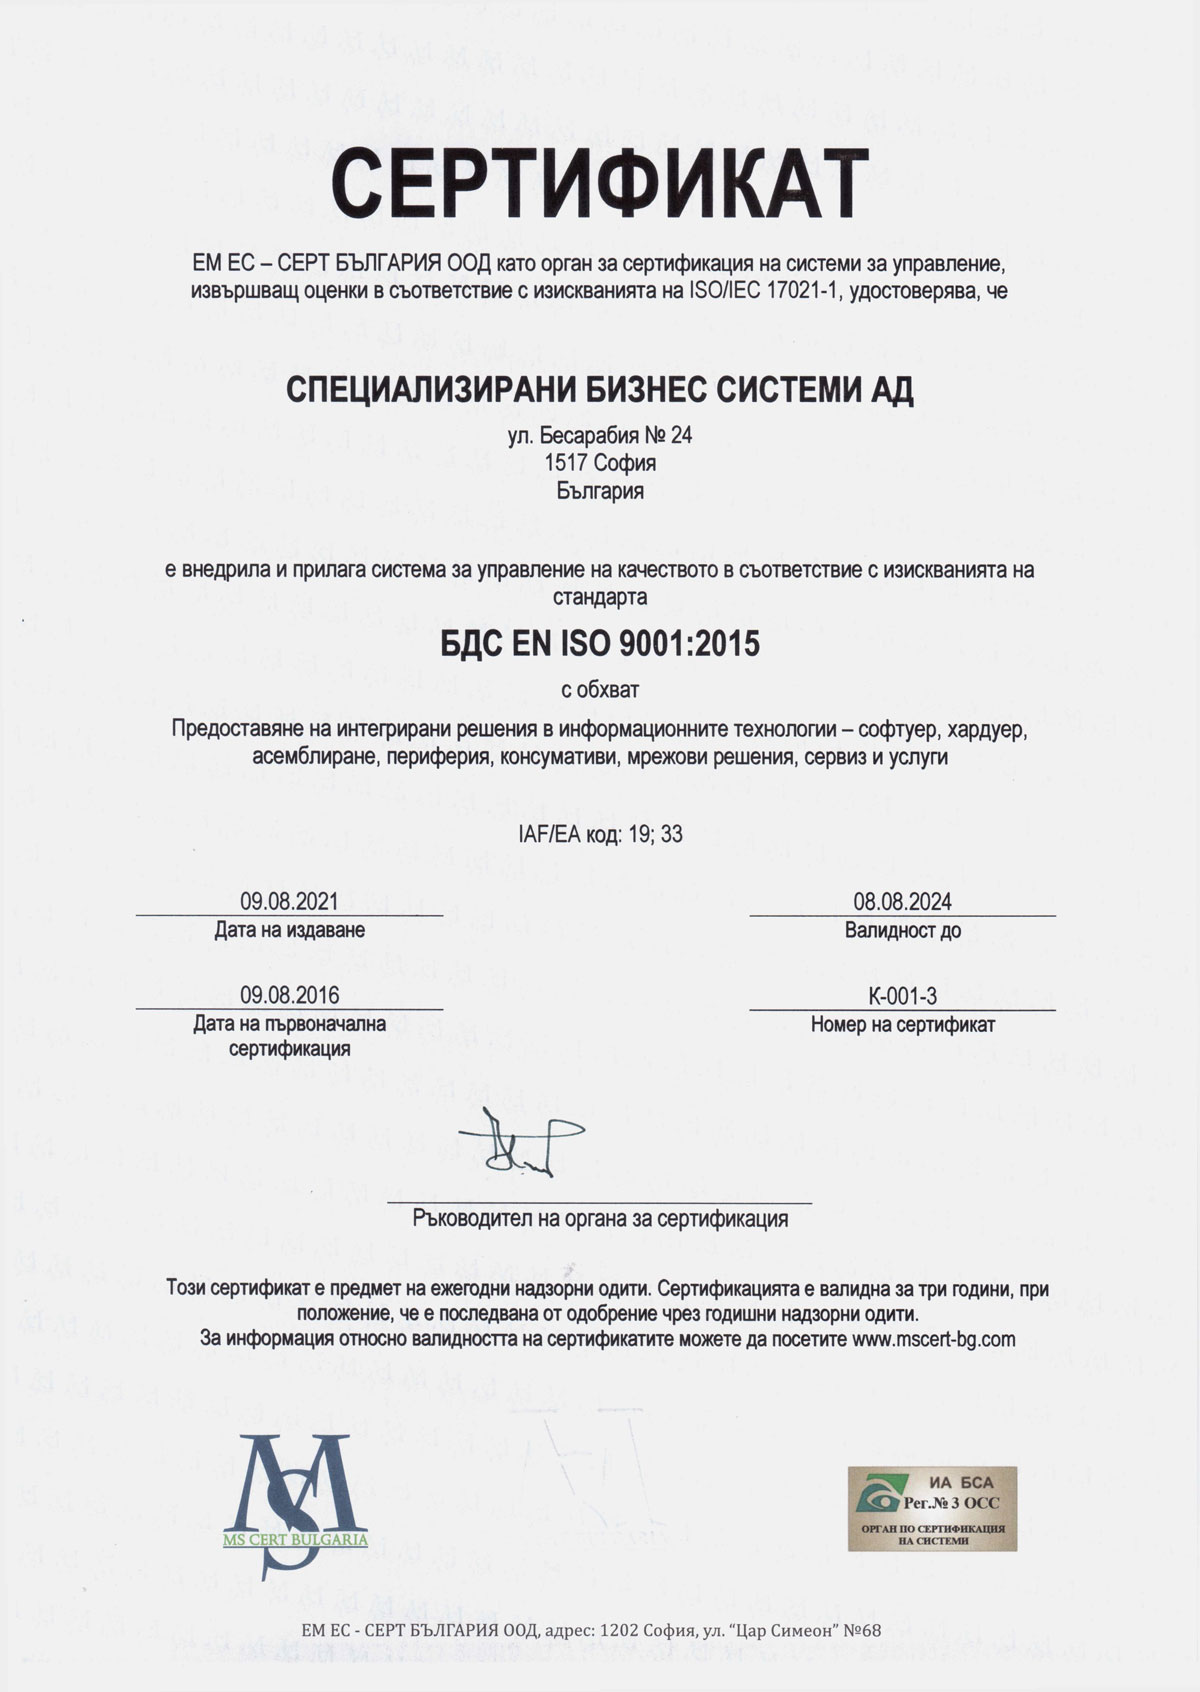 CERTIFICATE ISO 9001 2015 SBS BG